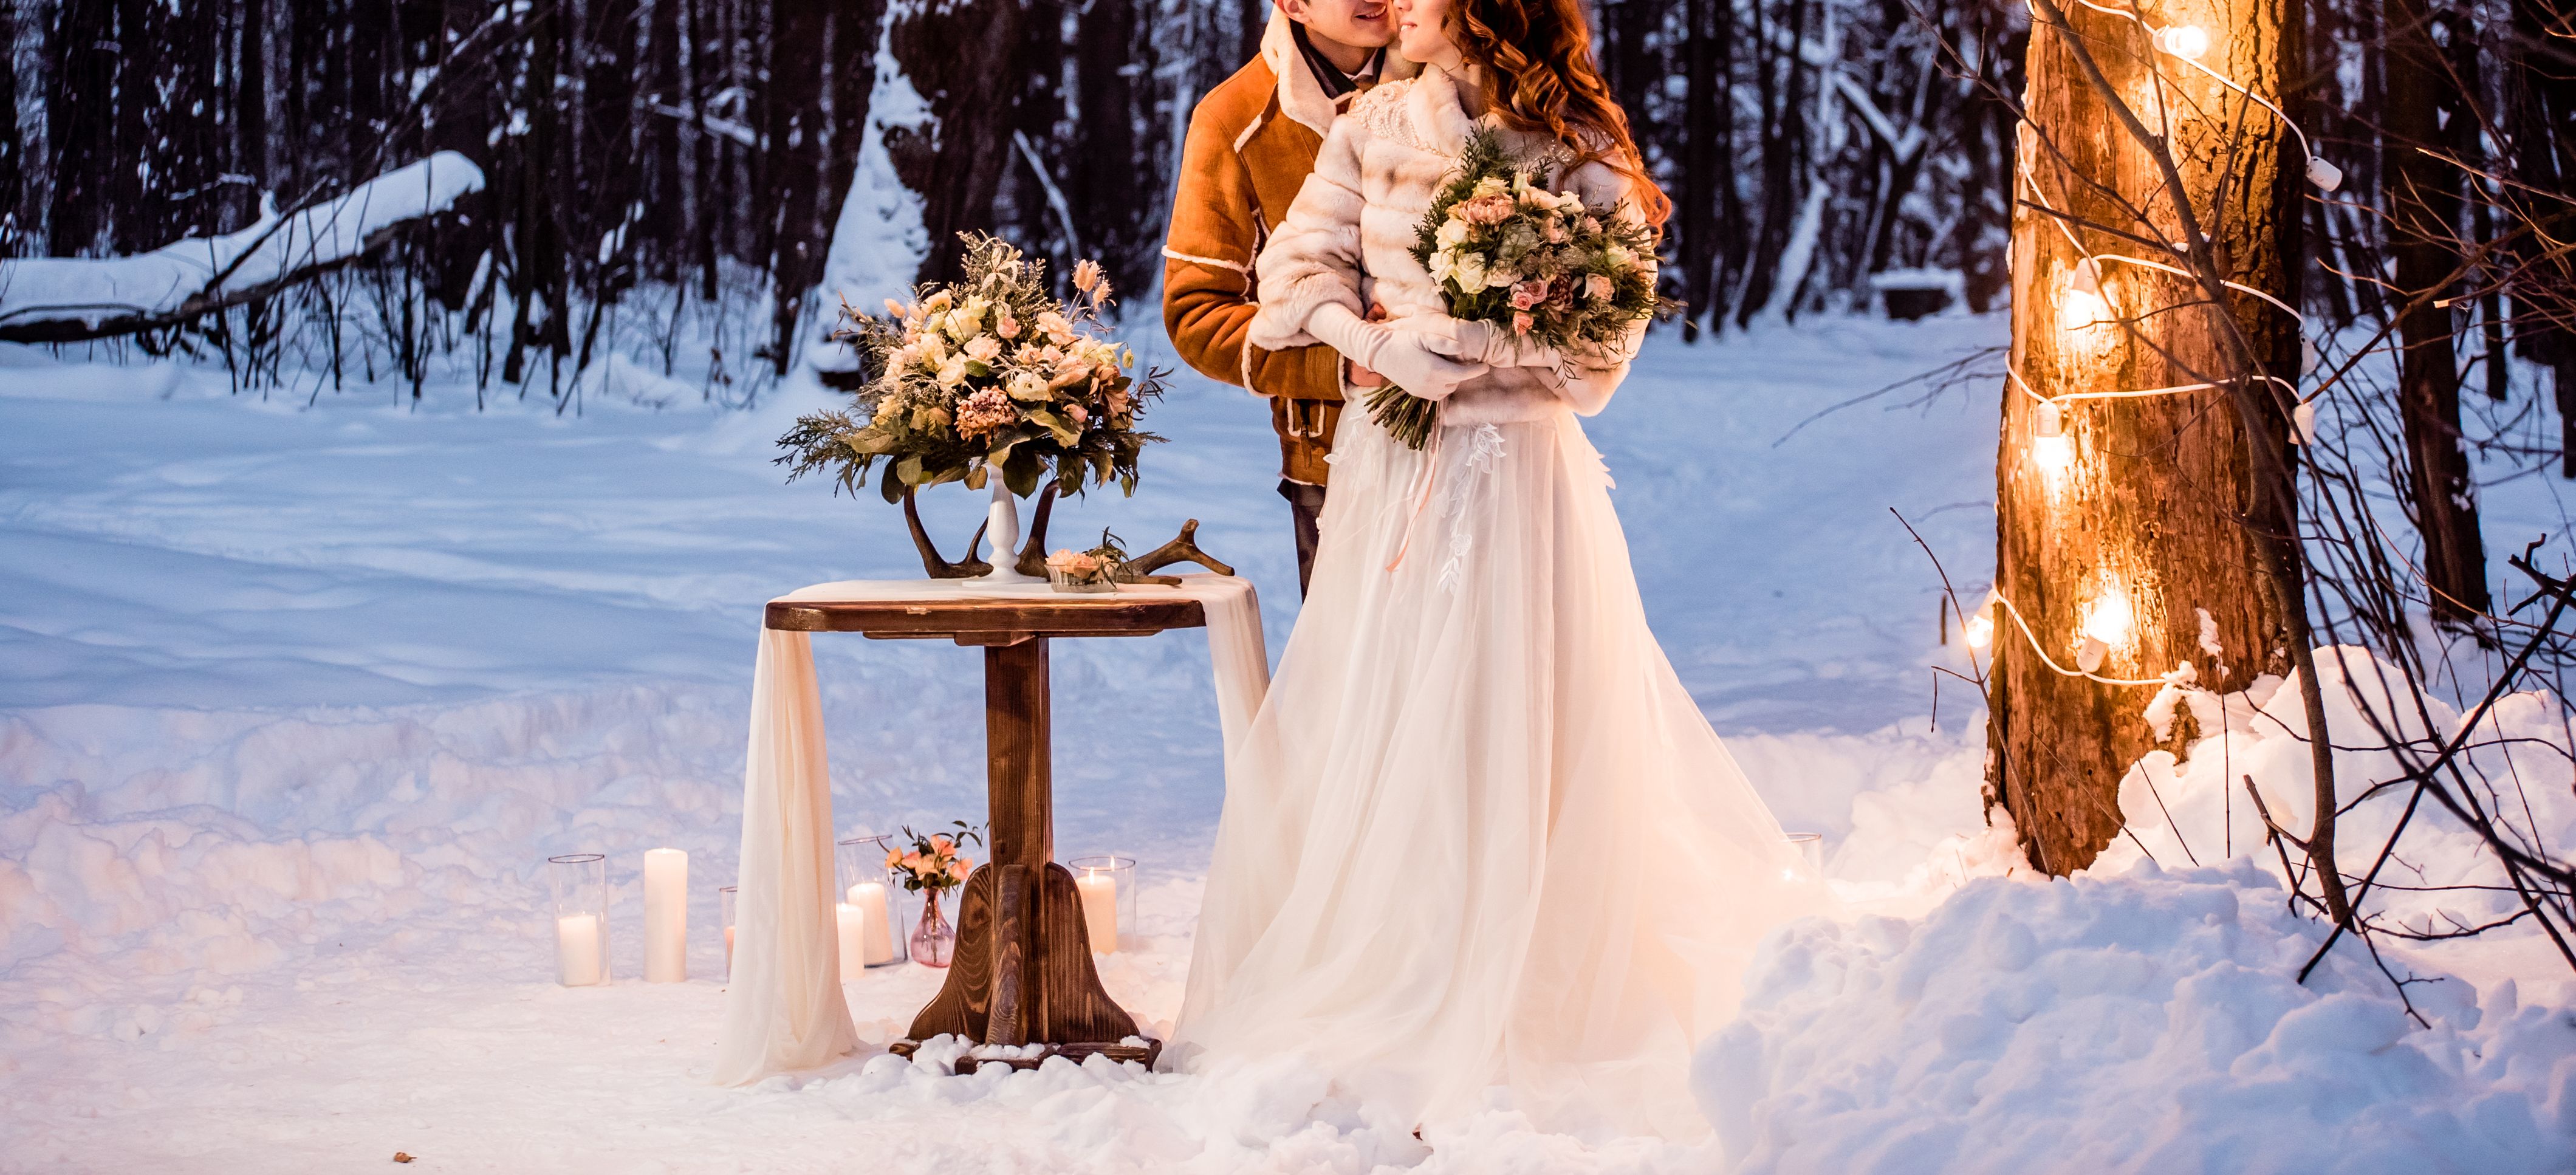 Novomanzelsky par ve snehu s dekoraci kolem sebe